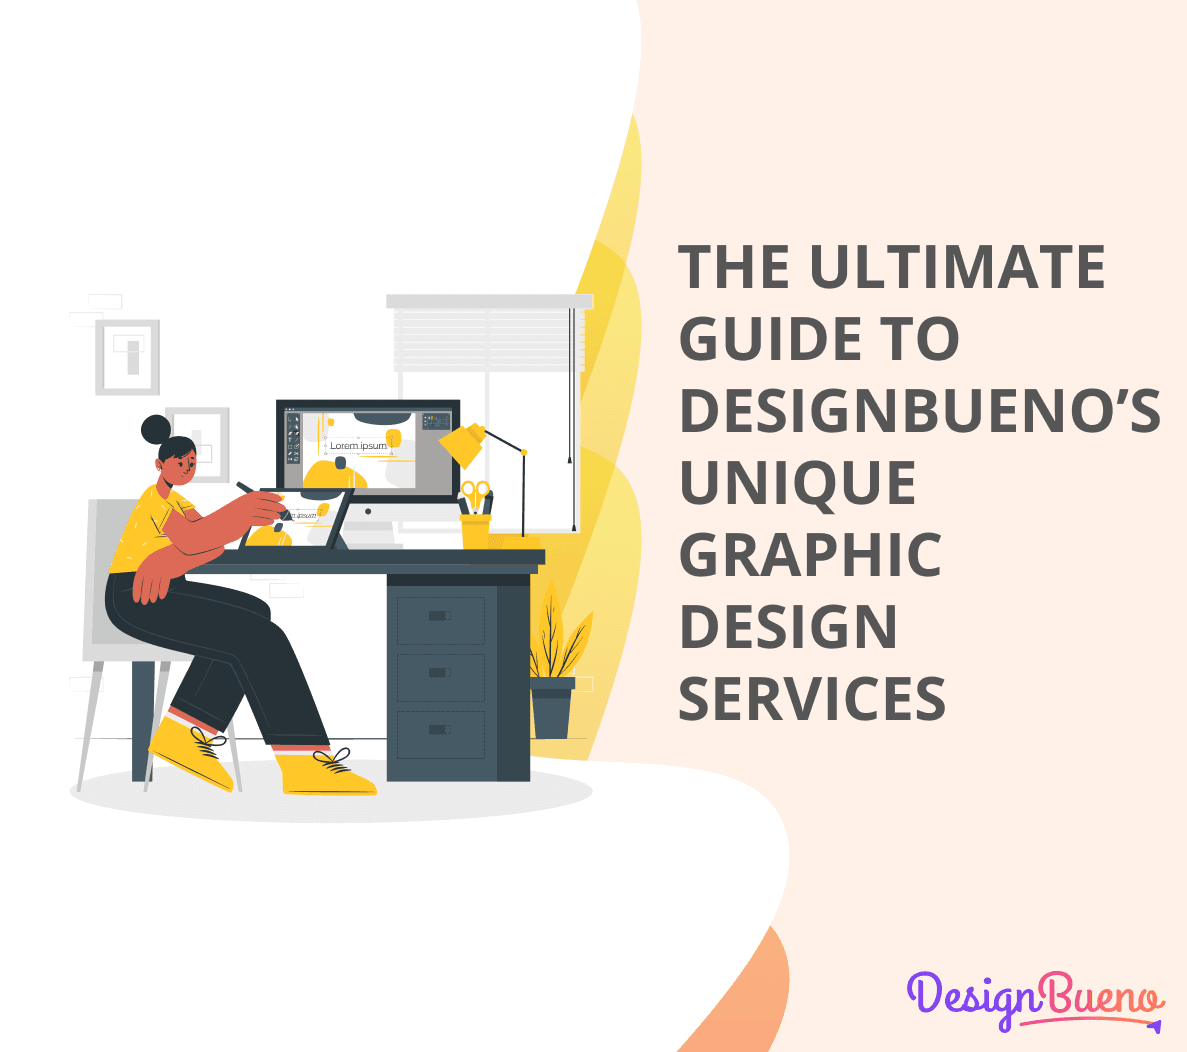 The Ultimate Guide to DesignBueno’s Unique Graphic Design Services cover